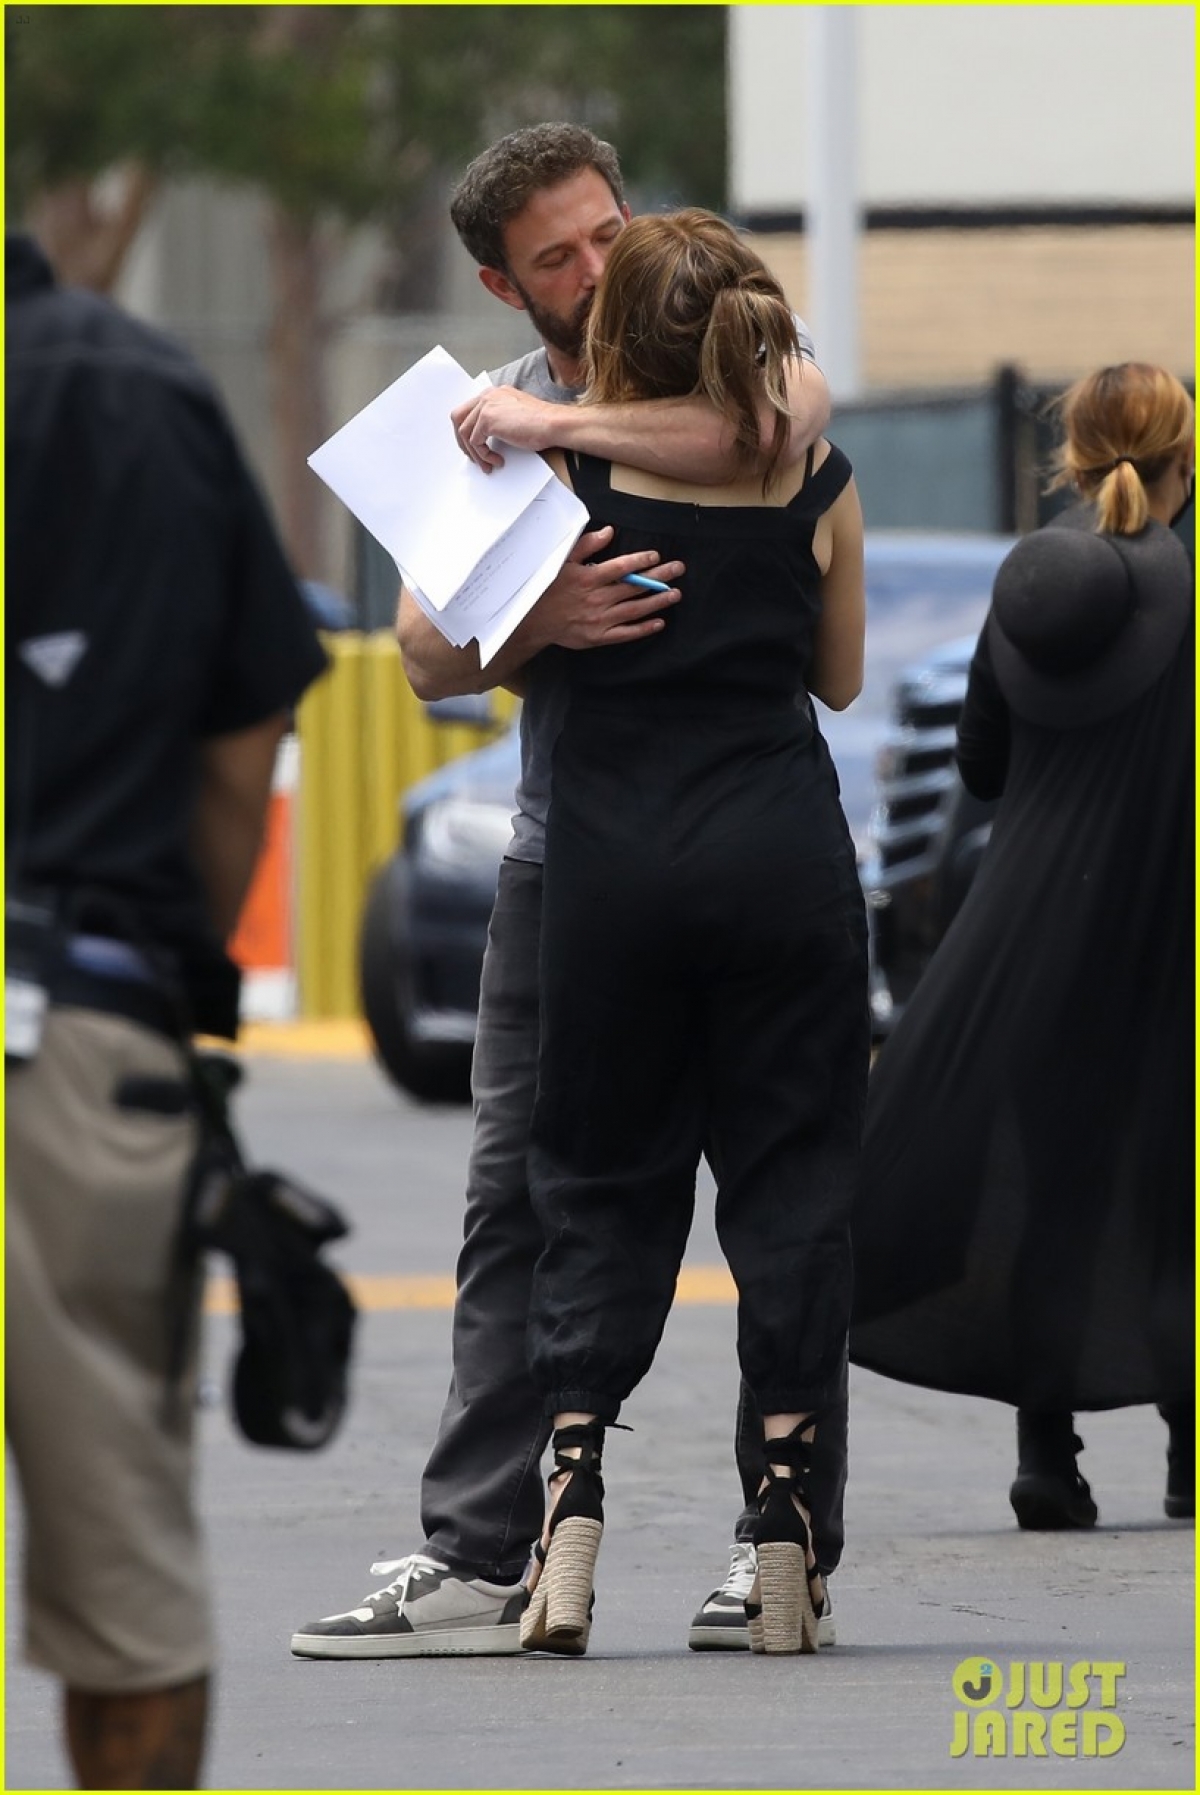 Jennifer Lopez và bạn trai khóa môi ngọt ngào trên phim trường - Ảnh 2.